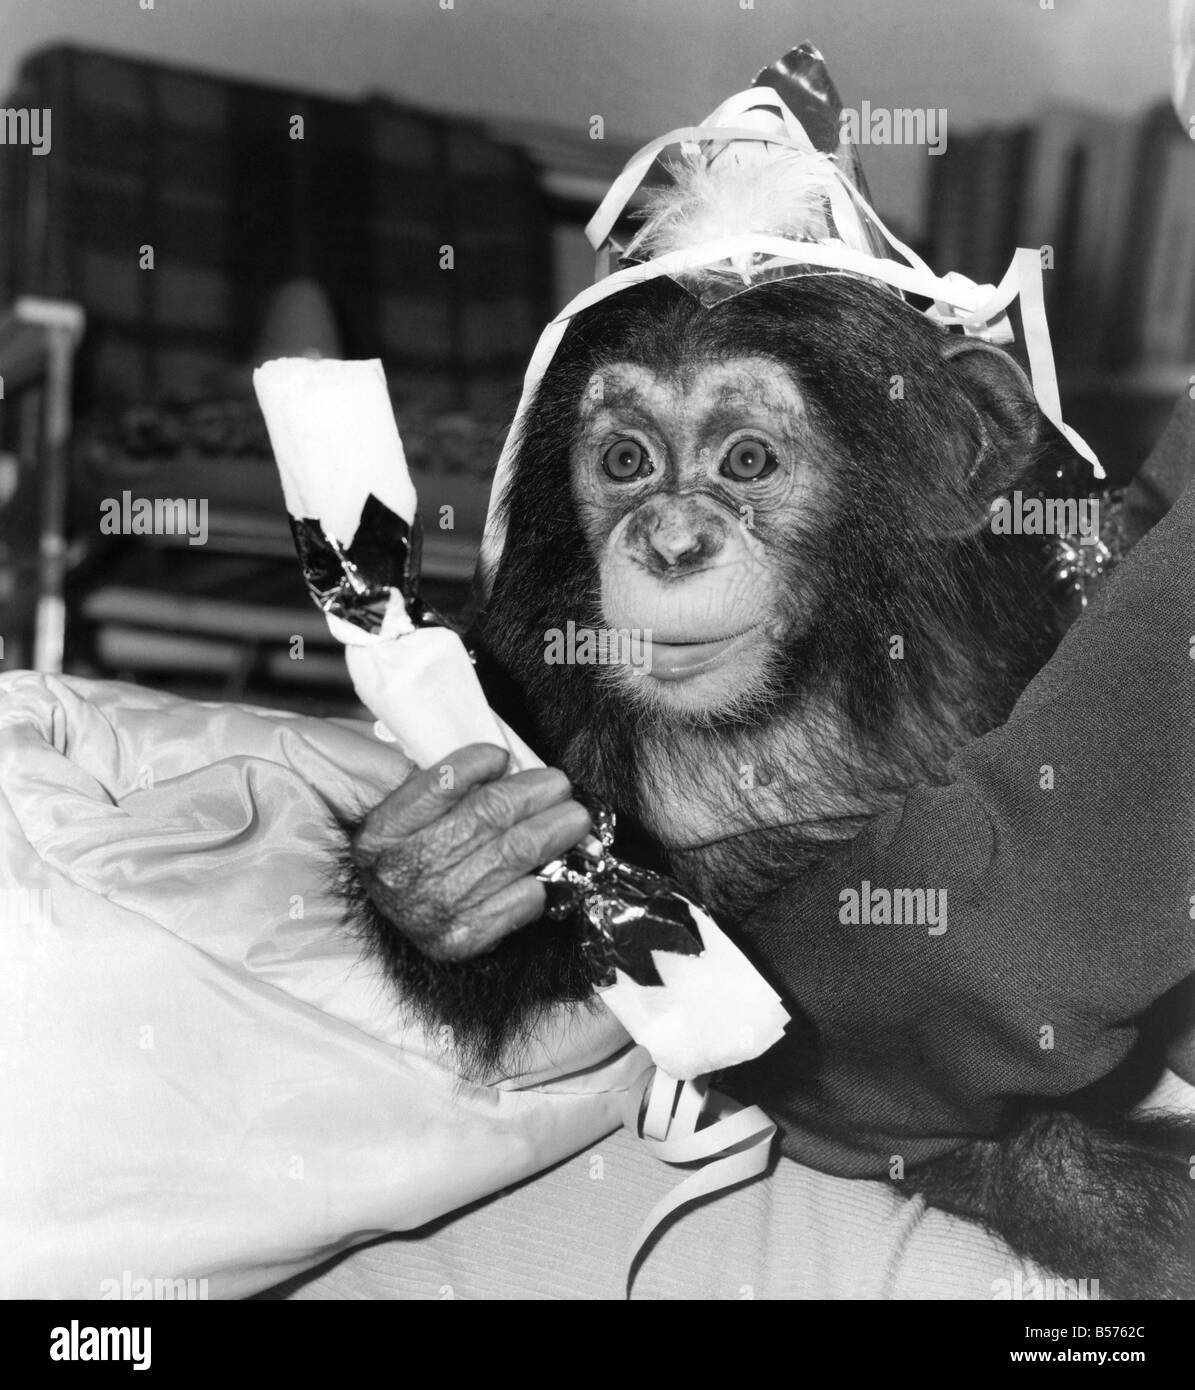 Face à la caméra pour la première fois, c'est le Prince William la deuxième de le zoo de Twycross. Et, contrairement à son homonyme qui était à la recherche de sorte dans la bouche d'hier, il est simplement profiter de son premier Noël. Les cinq mois chimp a été nommé William parce qu'il est né quelques semaines après que le futur héritier du trône. Malheureusement la deuxième William a été rejeté par sa mère au zoo de Leicestershire. Depuis, il a été élevé par le personnel. Maintenant, le chimpanzé ne peut pas attendre pour obtenir dans l'oscillation de la Noël. Décembre 1982 P004082 Banque D'Images